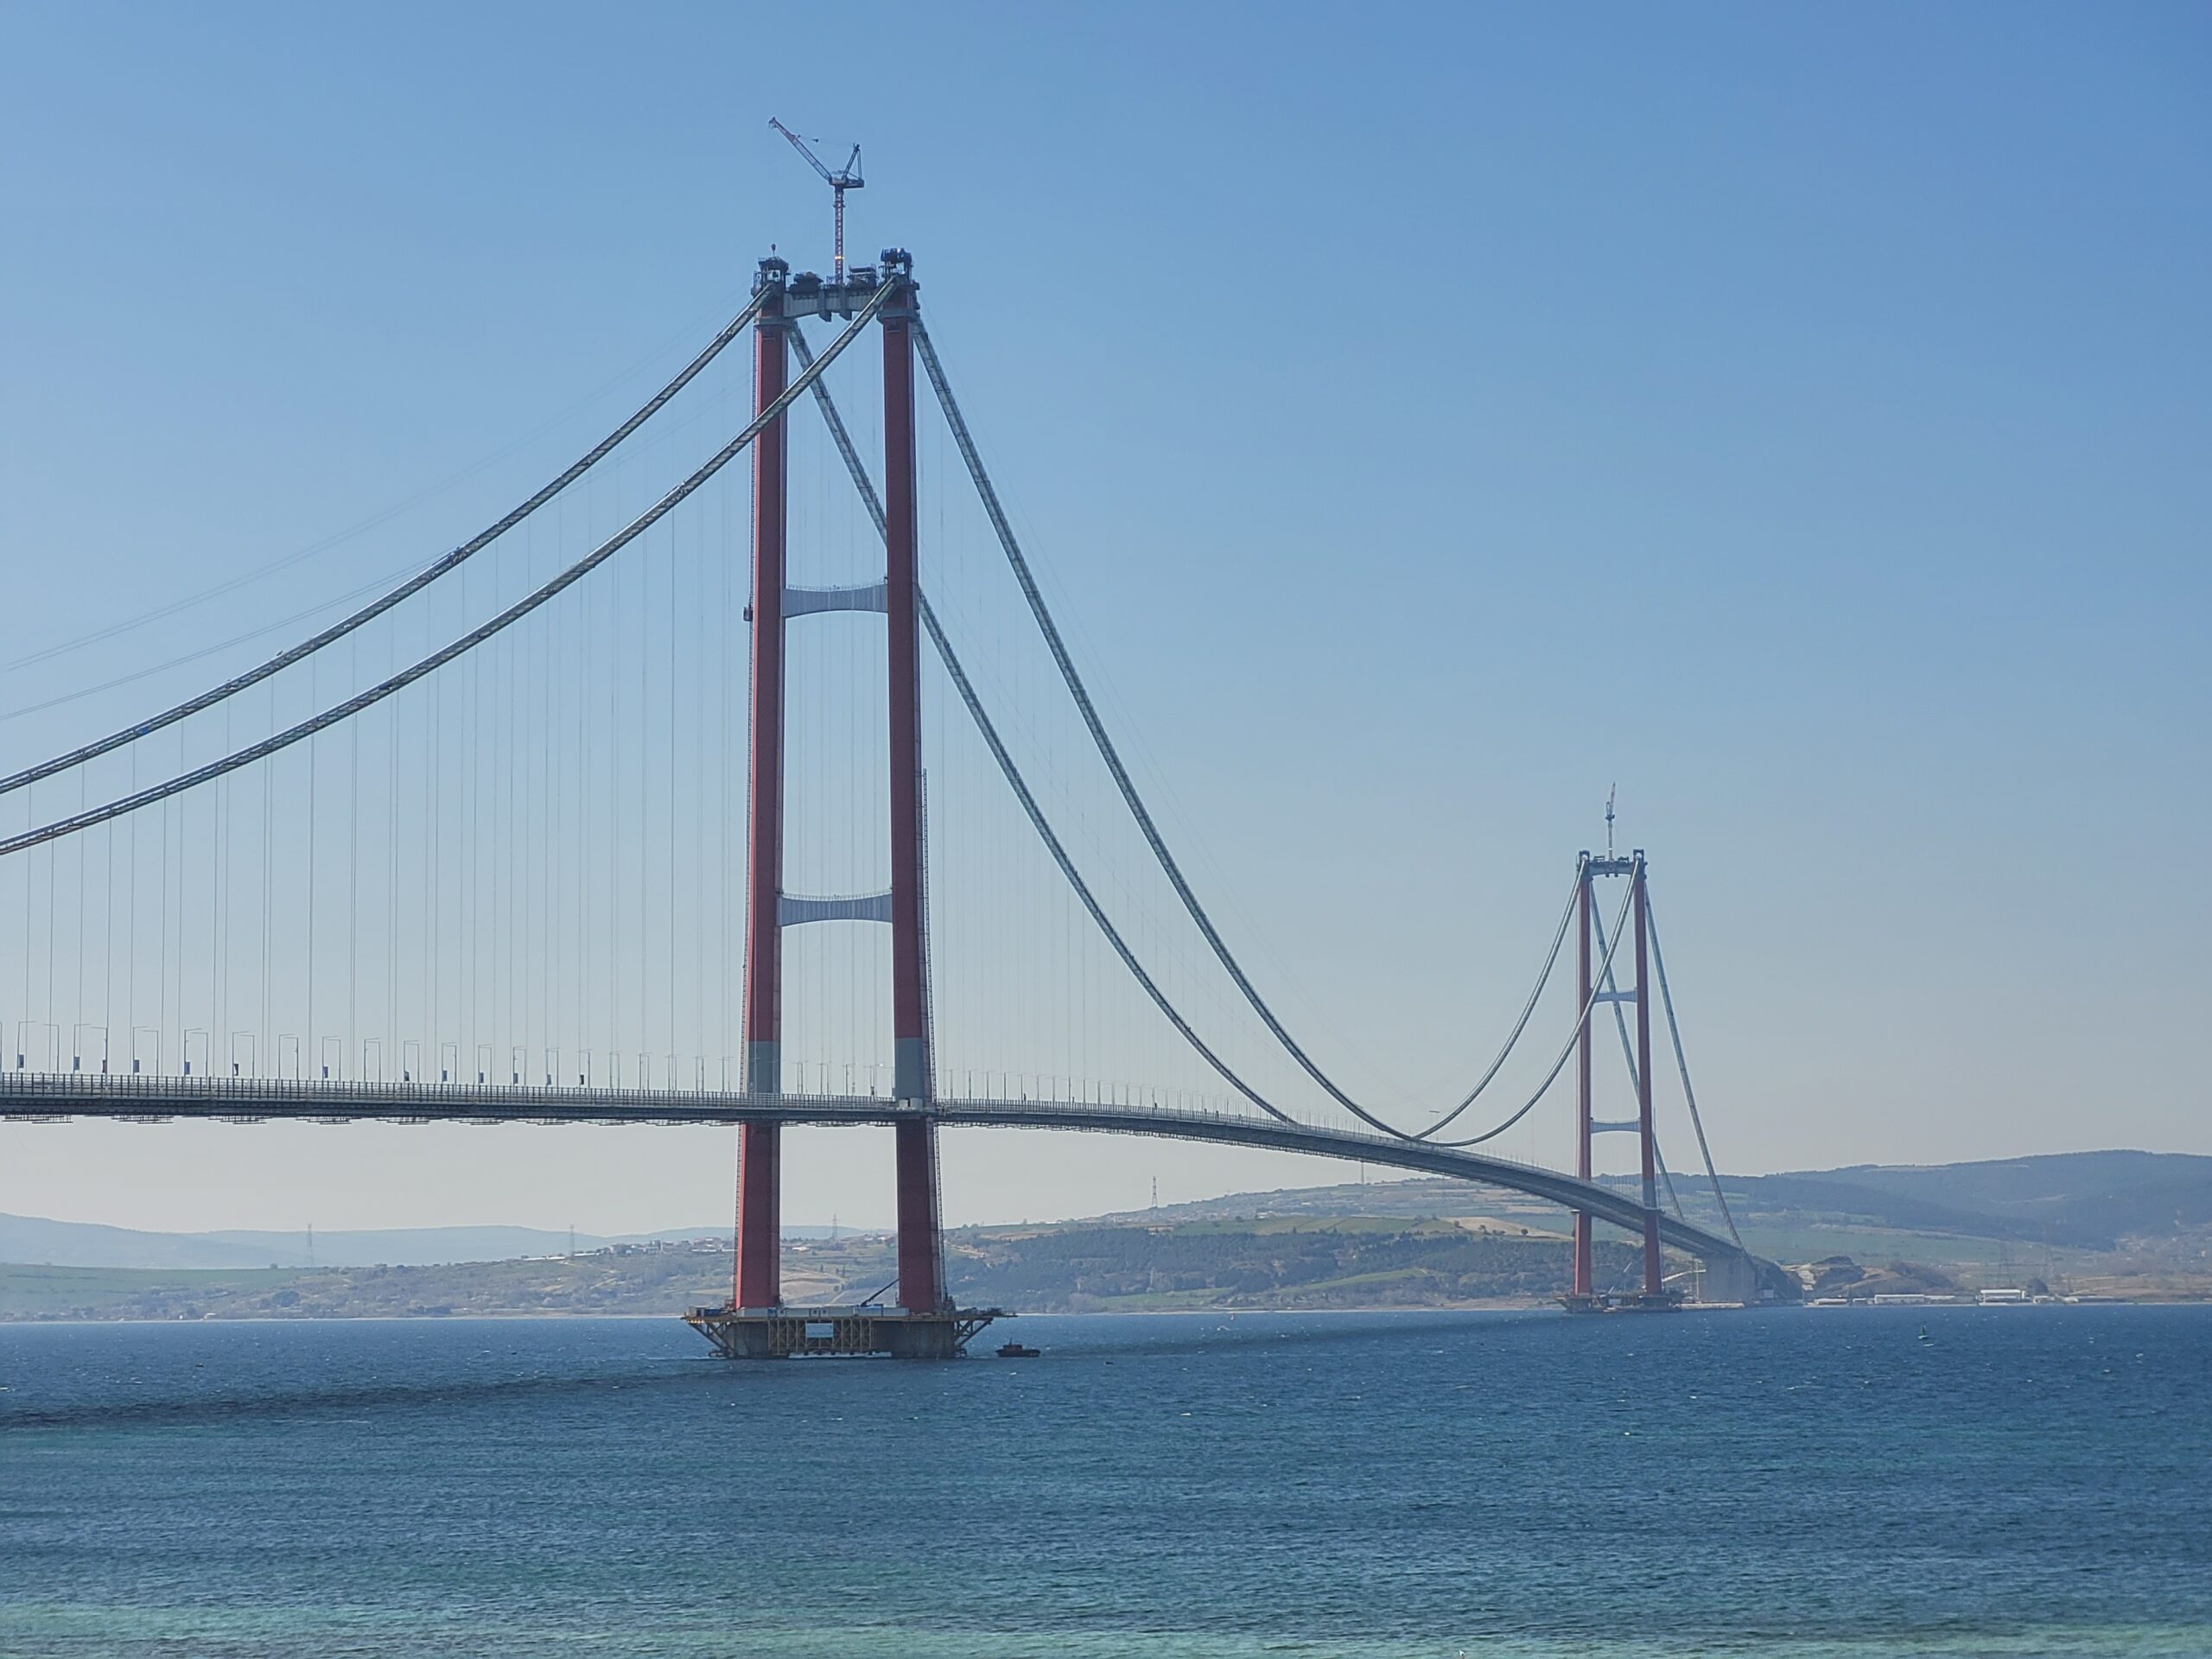 Köprü için çok teşekkür ederimSonunda Çanakkale Köprüsü’nden geçtim.Eğer Edremit, Ayvacık, Küçükkuyu hatta Behramkale gibi yerlerden yola çıkıp İstanbul’a geleceksiniz, bu yol sizin yolunuzu kısaltmıyor, yolculuk sürenizi azaltmıyor. Hatta arttırıyor.İstanbul-İzmir otoyolundan gelmek daha iyi ama haliyle epey daha pahalı.Bu yazıyı yazmamın nedeni ise size yol tavsiyesinde bulunmak değil.Devletime teşekkür etmek için yazıyorum.59 yaşında bir Türk vatandaşıyım.59 yıldır ilk kez devletim bana, şu kendi halinde vatandaşı Fatih Altaylı’ya özel bir yol, bir köprü yaptı.Çanakkale Köprüsü’nden geçtiğim saat 18:00 sularında köprüden geçen tek araç içinde benim de bulunduğum araçtı.Dünyanın en uzun köprüsünde ne bizim ilerlediğimiz yönde ne de karşı yönde tek bir araç dahi görmedim.Ve tabii kendimi çok özel hissettim.Koca köprü ben geçeyim diye yapılmıştı.Bu yüzden bu köprüyü düşünen, planlayan, yaptıran ve yapanlara teşekkür etmek istiyorum.Tabii bana özel olarak yapılan bu köprünün parasını yıllar boyu ödeyecek olan size ve çocuklarınıza ve hatta torunlarınıza da binlerce teşekkür. - 1915 Canakkale Bridge koprusu scaled